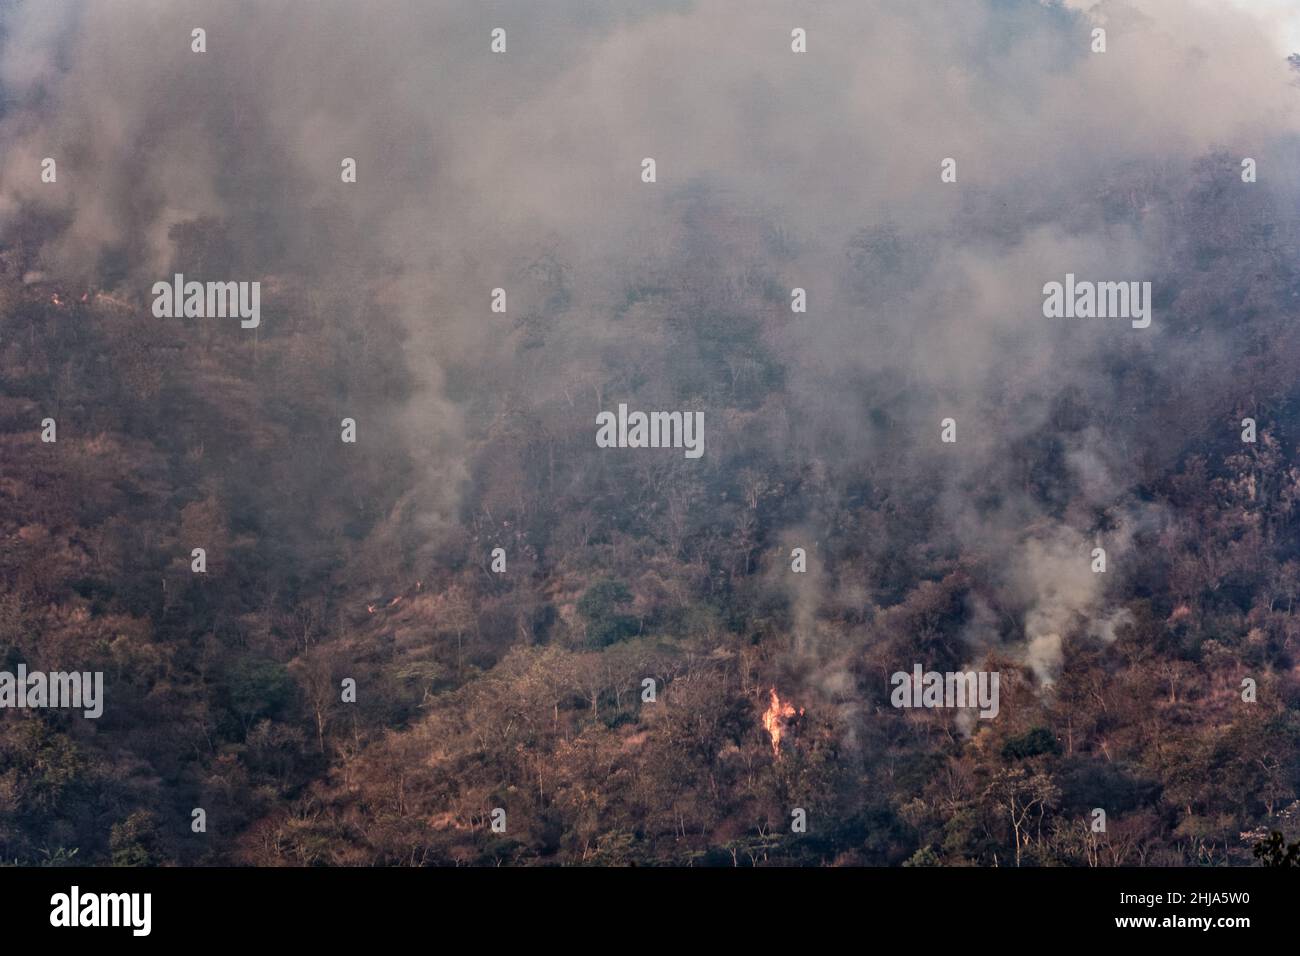 Fumo e fiamme da incendi appena illuminati si innalzano sulle montagne vicino a Jinotega, Nicaragua Foto Stock